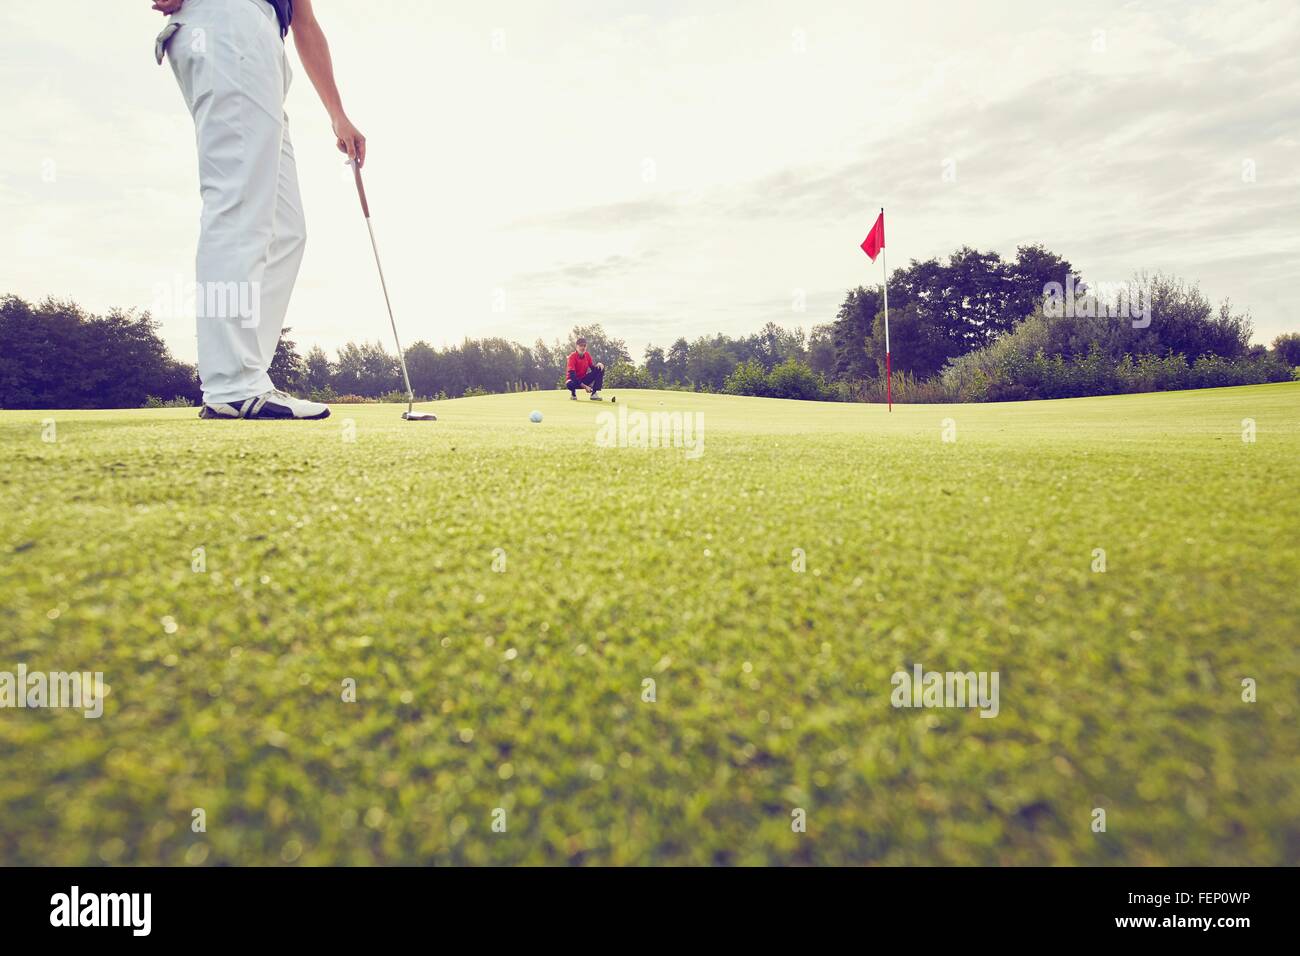 Il Golfer giocando vicino al foro, Korschenbroich, Dusseldorf, Germania Foto Stock